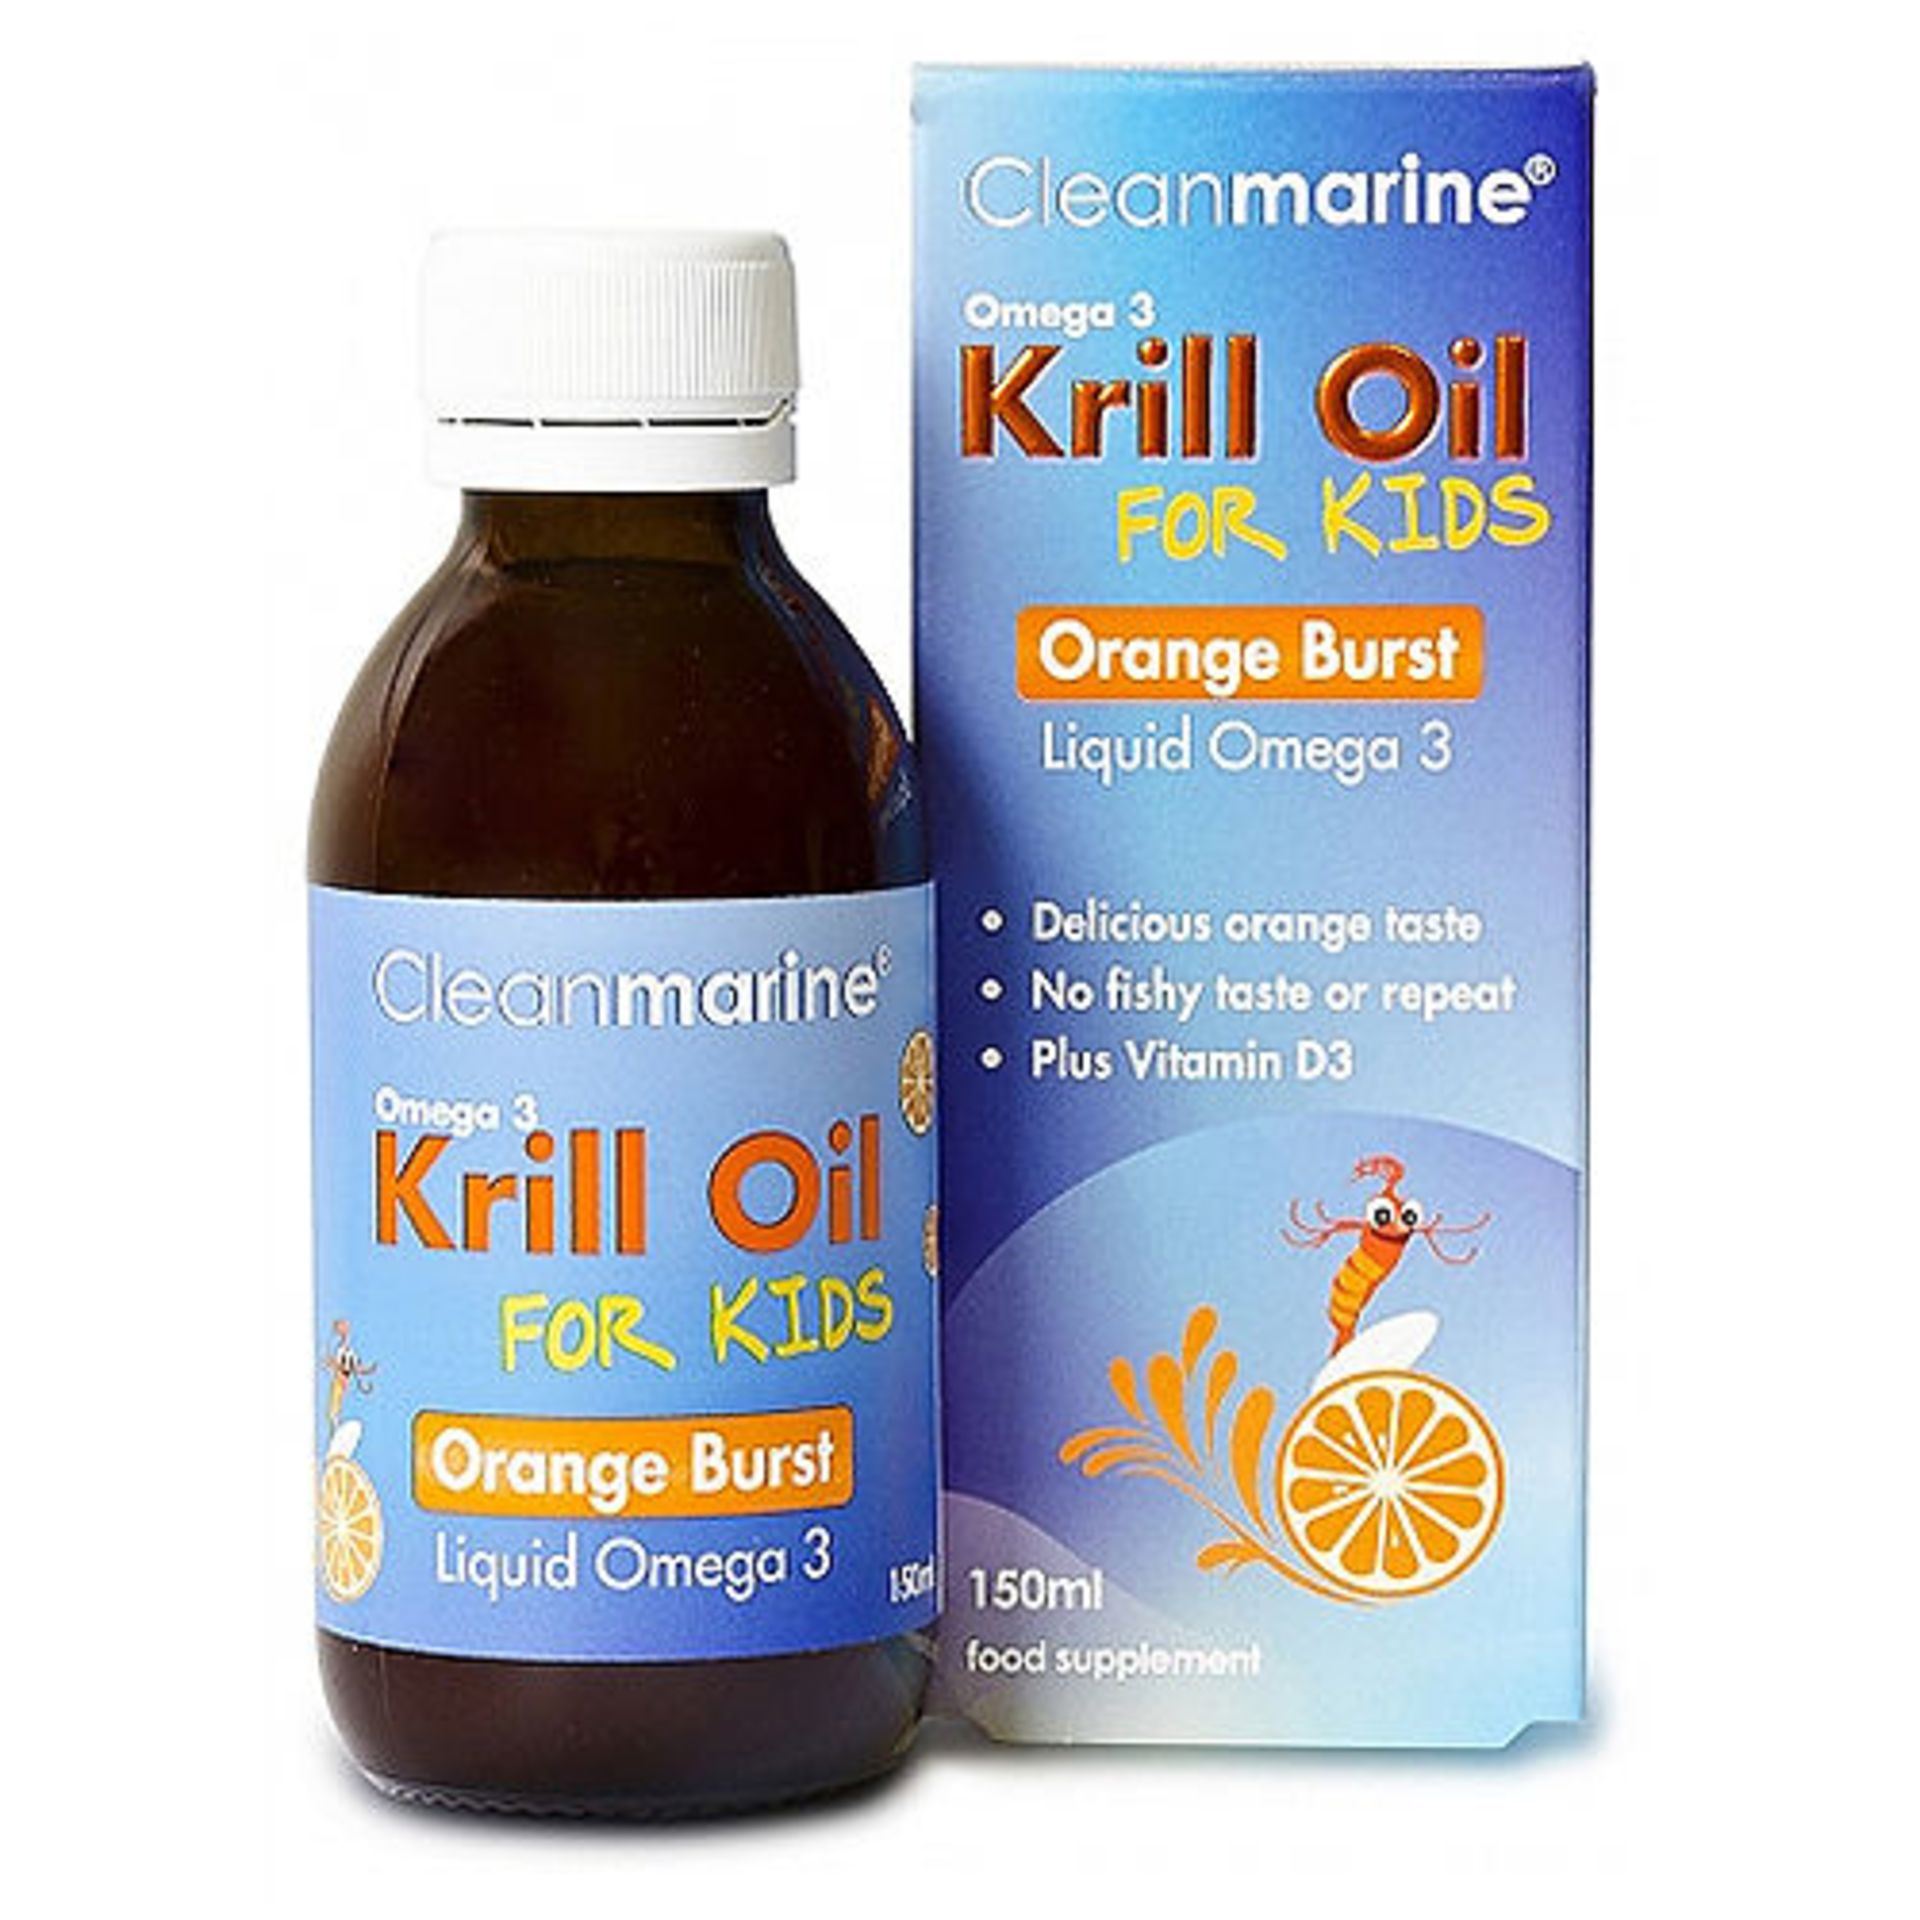 500 x bottles Cleanmarine Krill Oil for Kids - Orange Burst - Omega 3 Liquid - 150ml RRP £6'000.00